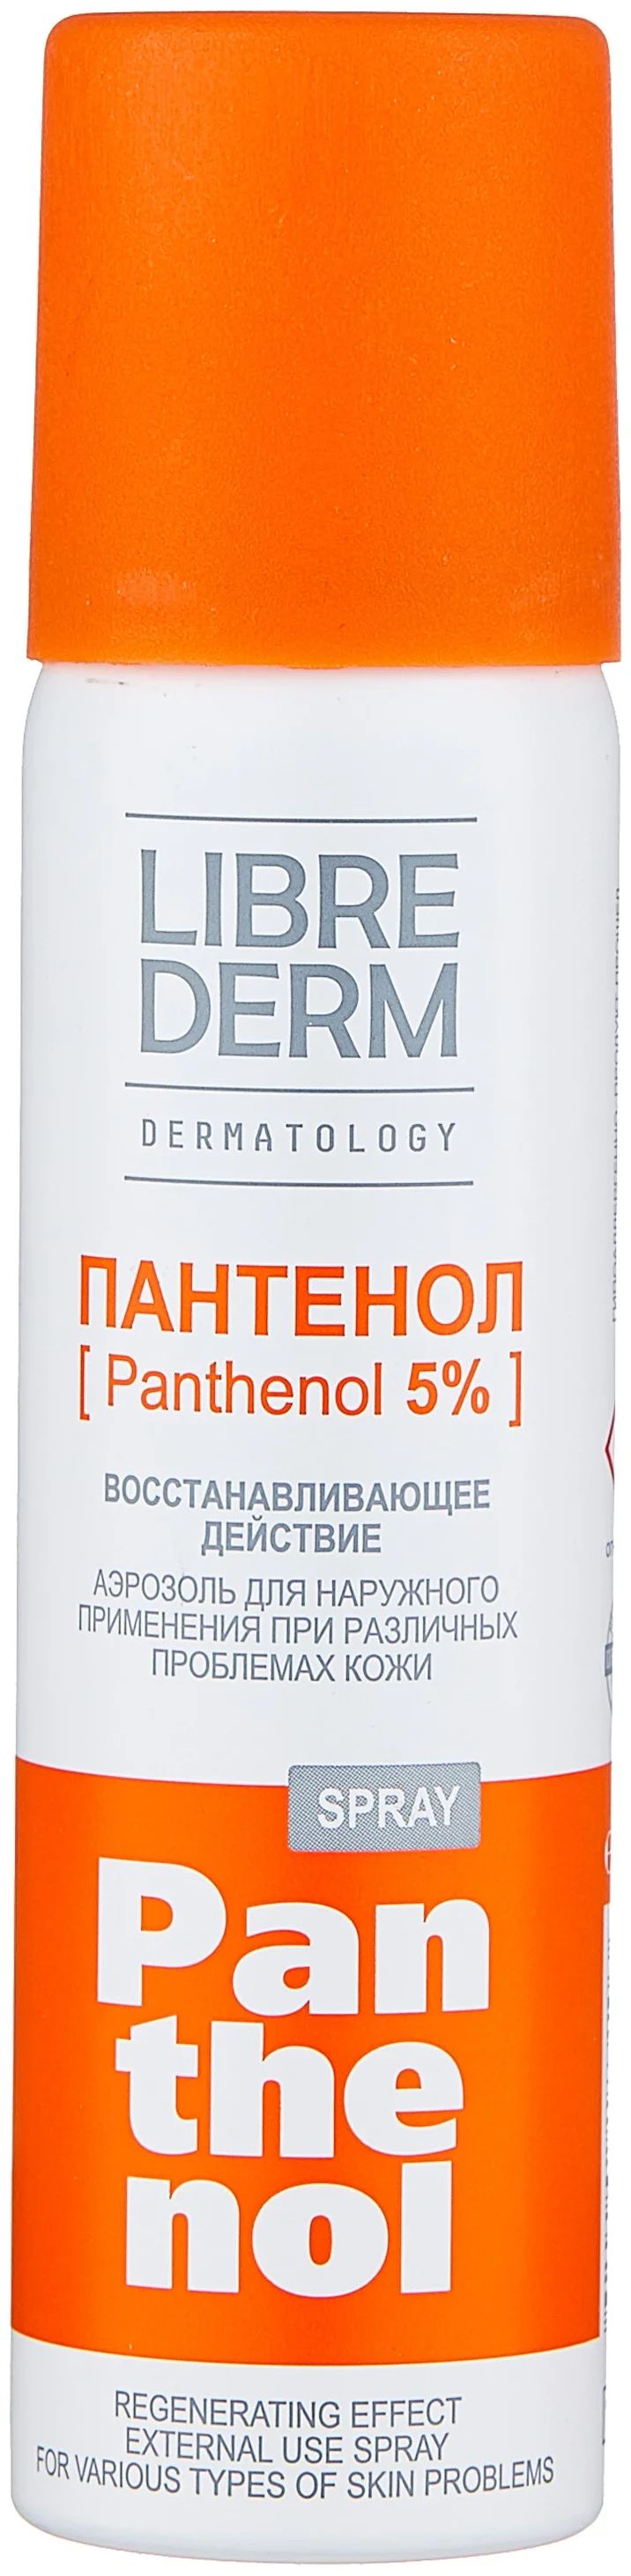 Аэрозоль для тела LIBREDERM Panthenol 5 %, 58 г librederm пантенол спрей аэрозоль 5% panthenol spray